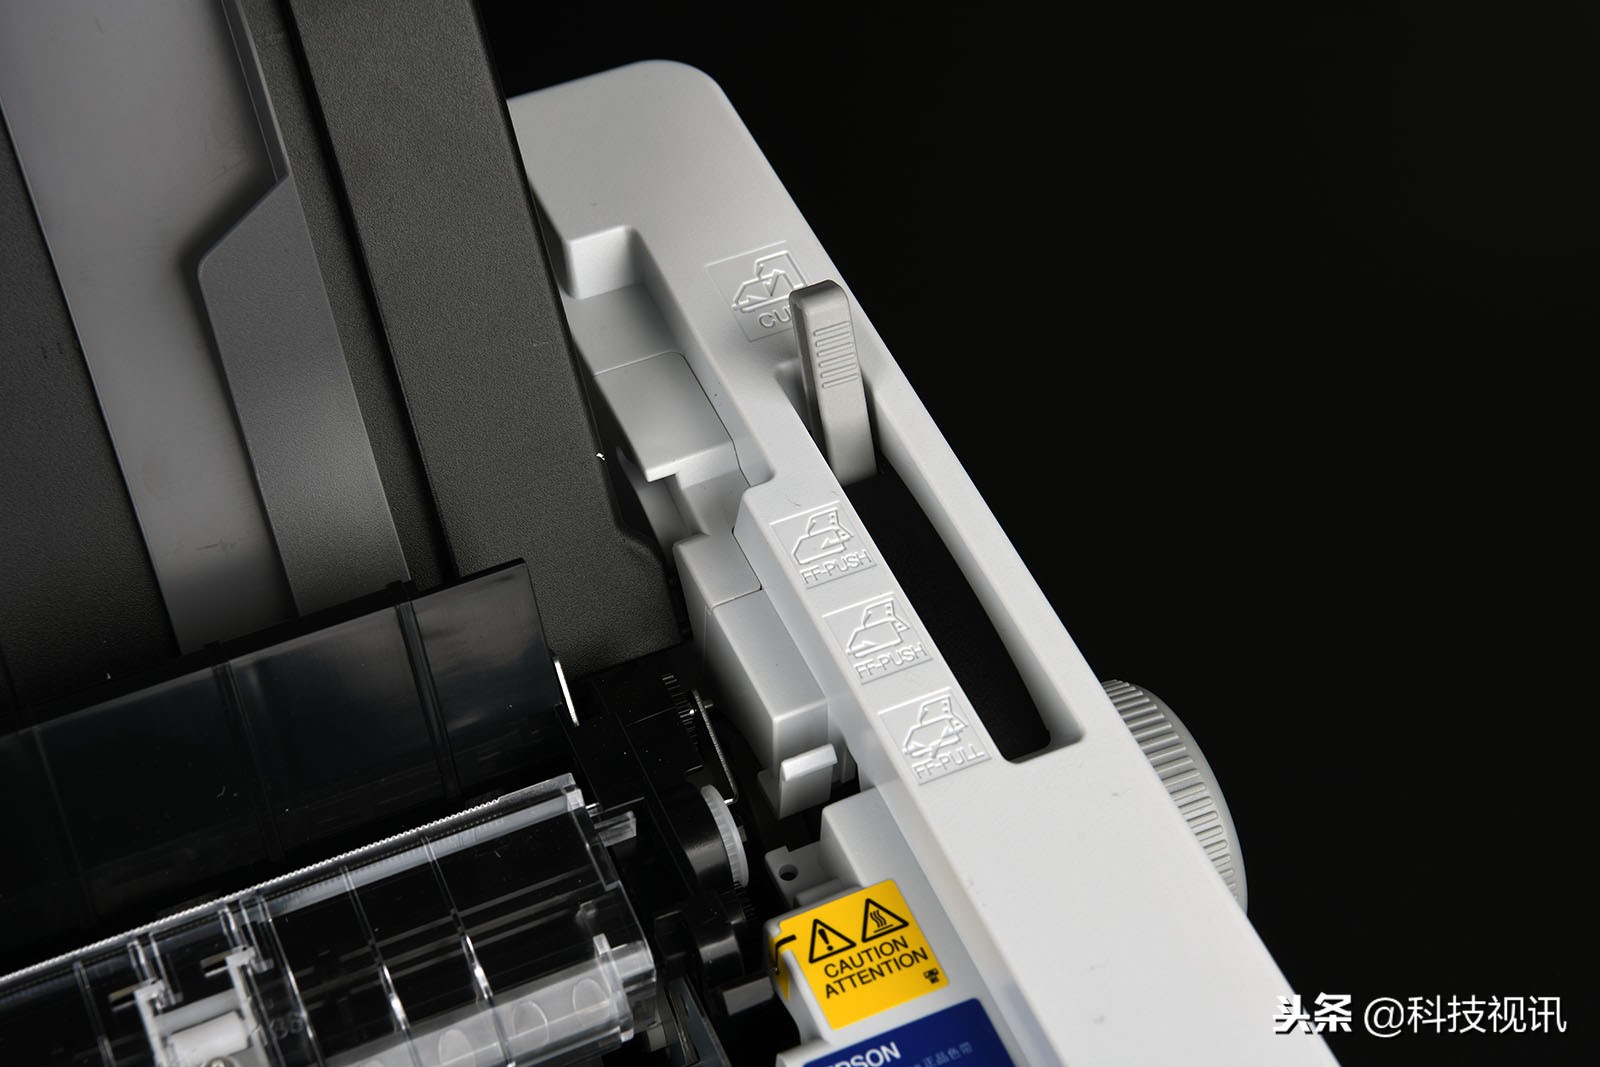 高速耐用 爱普生LQ-1600KIVH 136列针式打印机评测